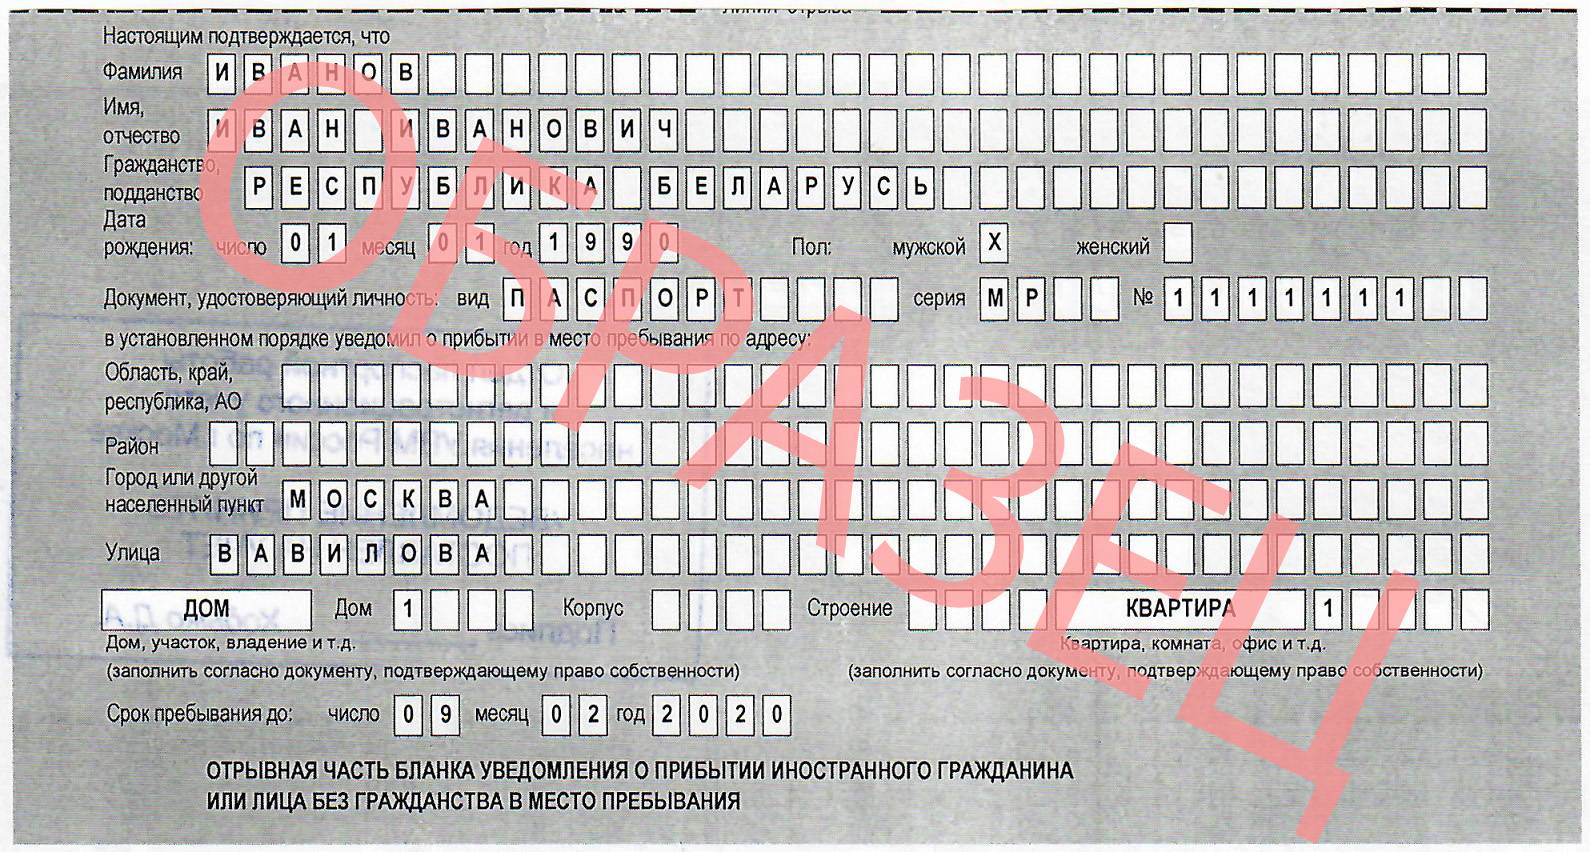 как выглядит временная регистрация для граждан рф в москве